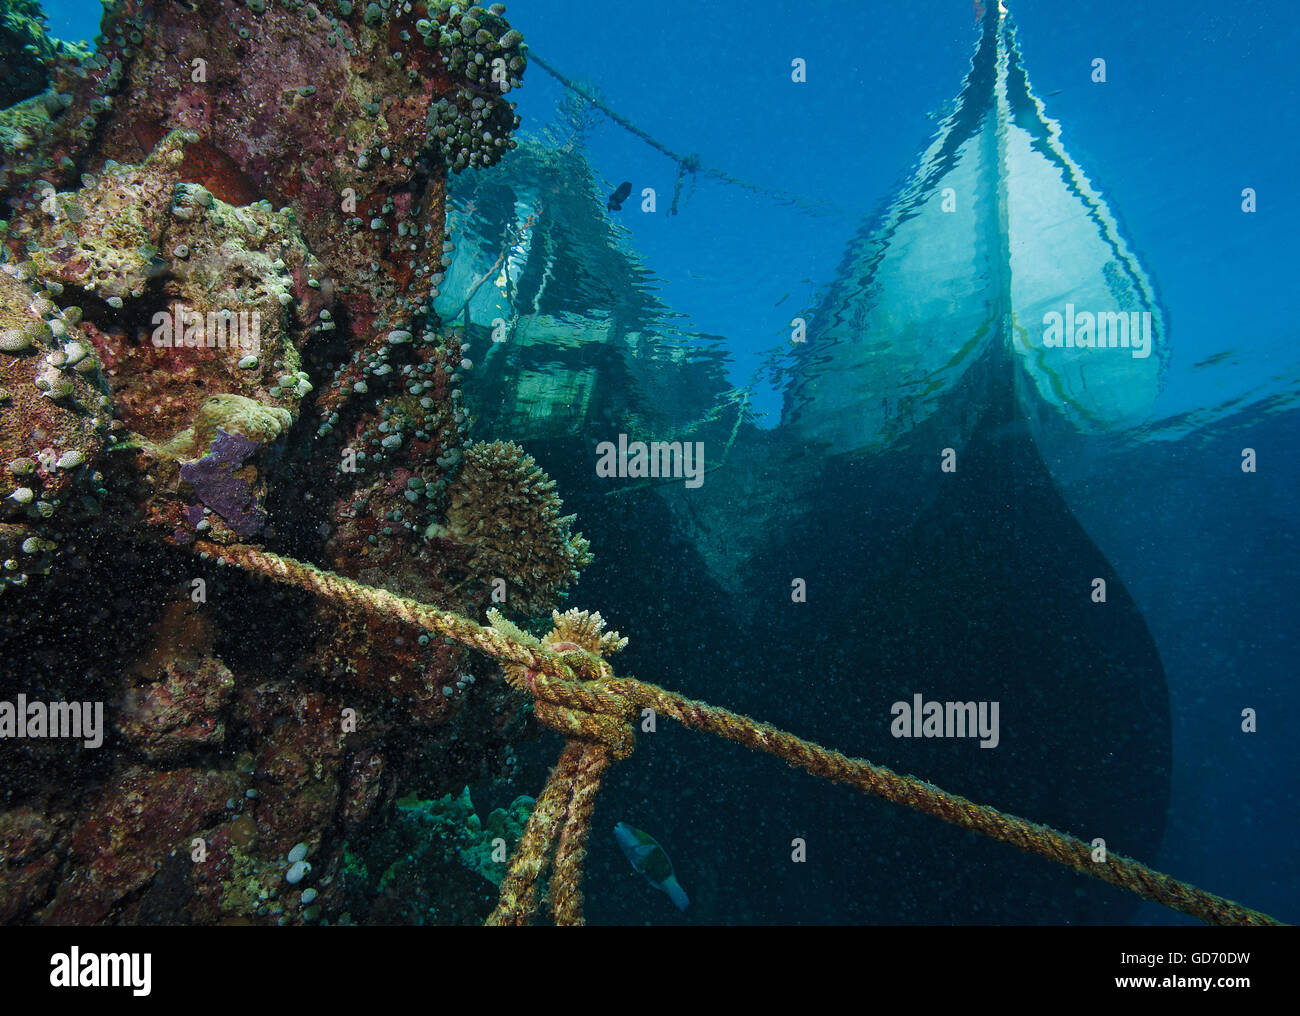 Imagen Submarina de barco atado al embarcadero junto con una vieja cuerda y arrecifes de coral, las Maldivas, océano Índico Foto de stock